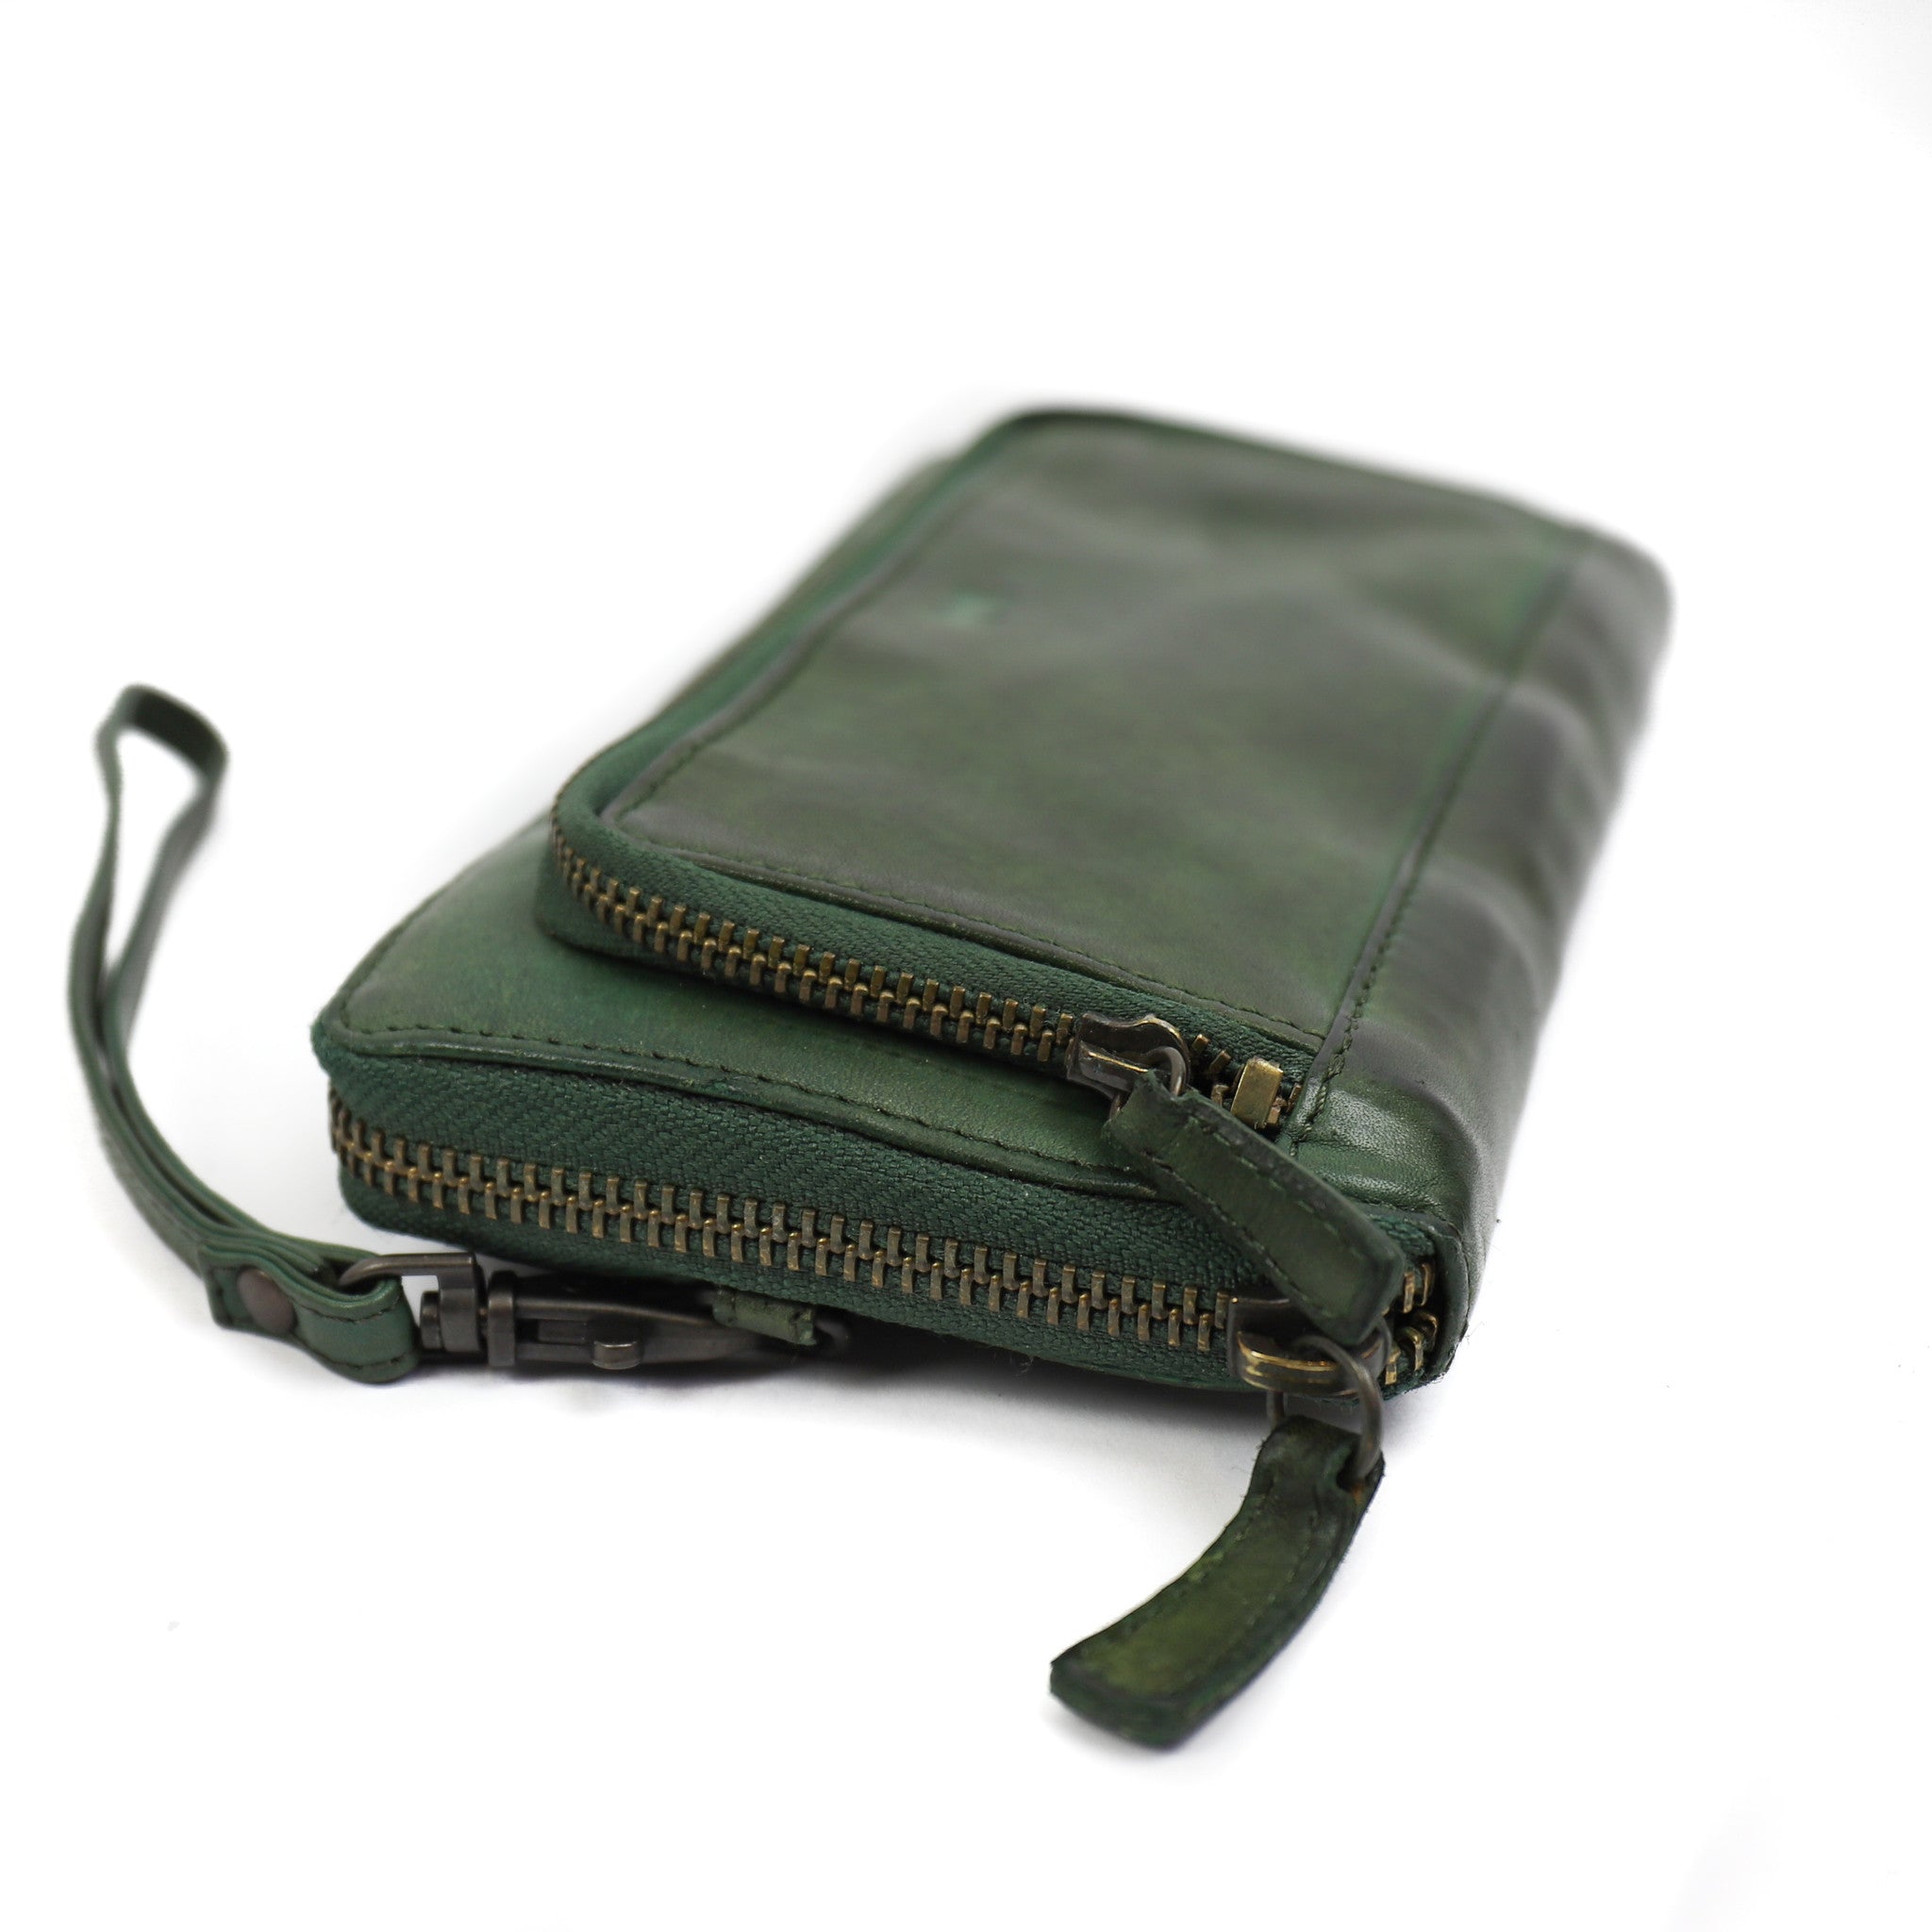 Zipper wallet 'Isa' green - CL 14851